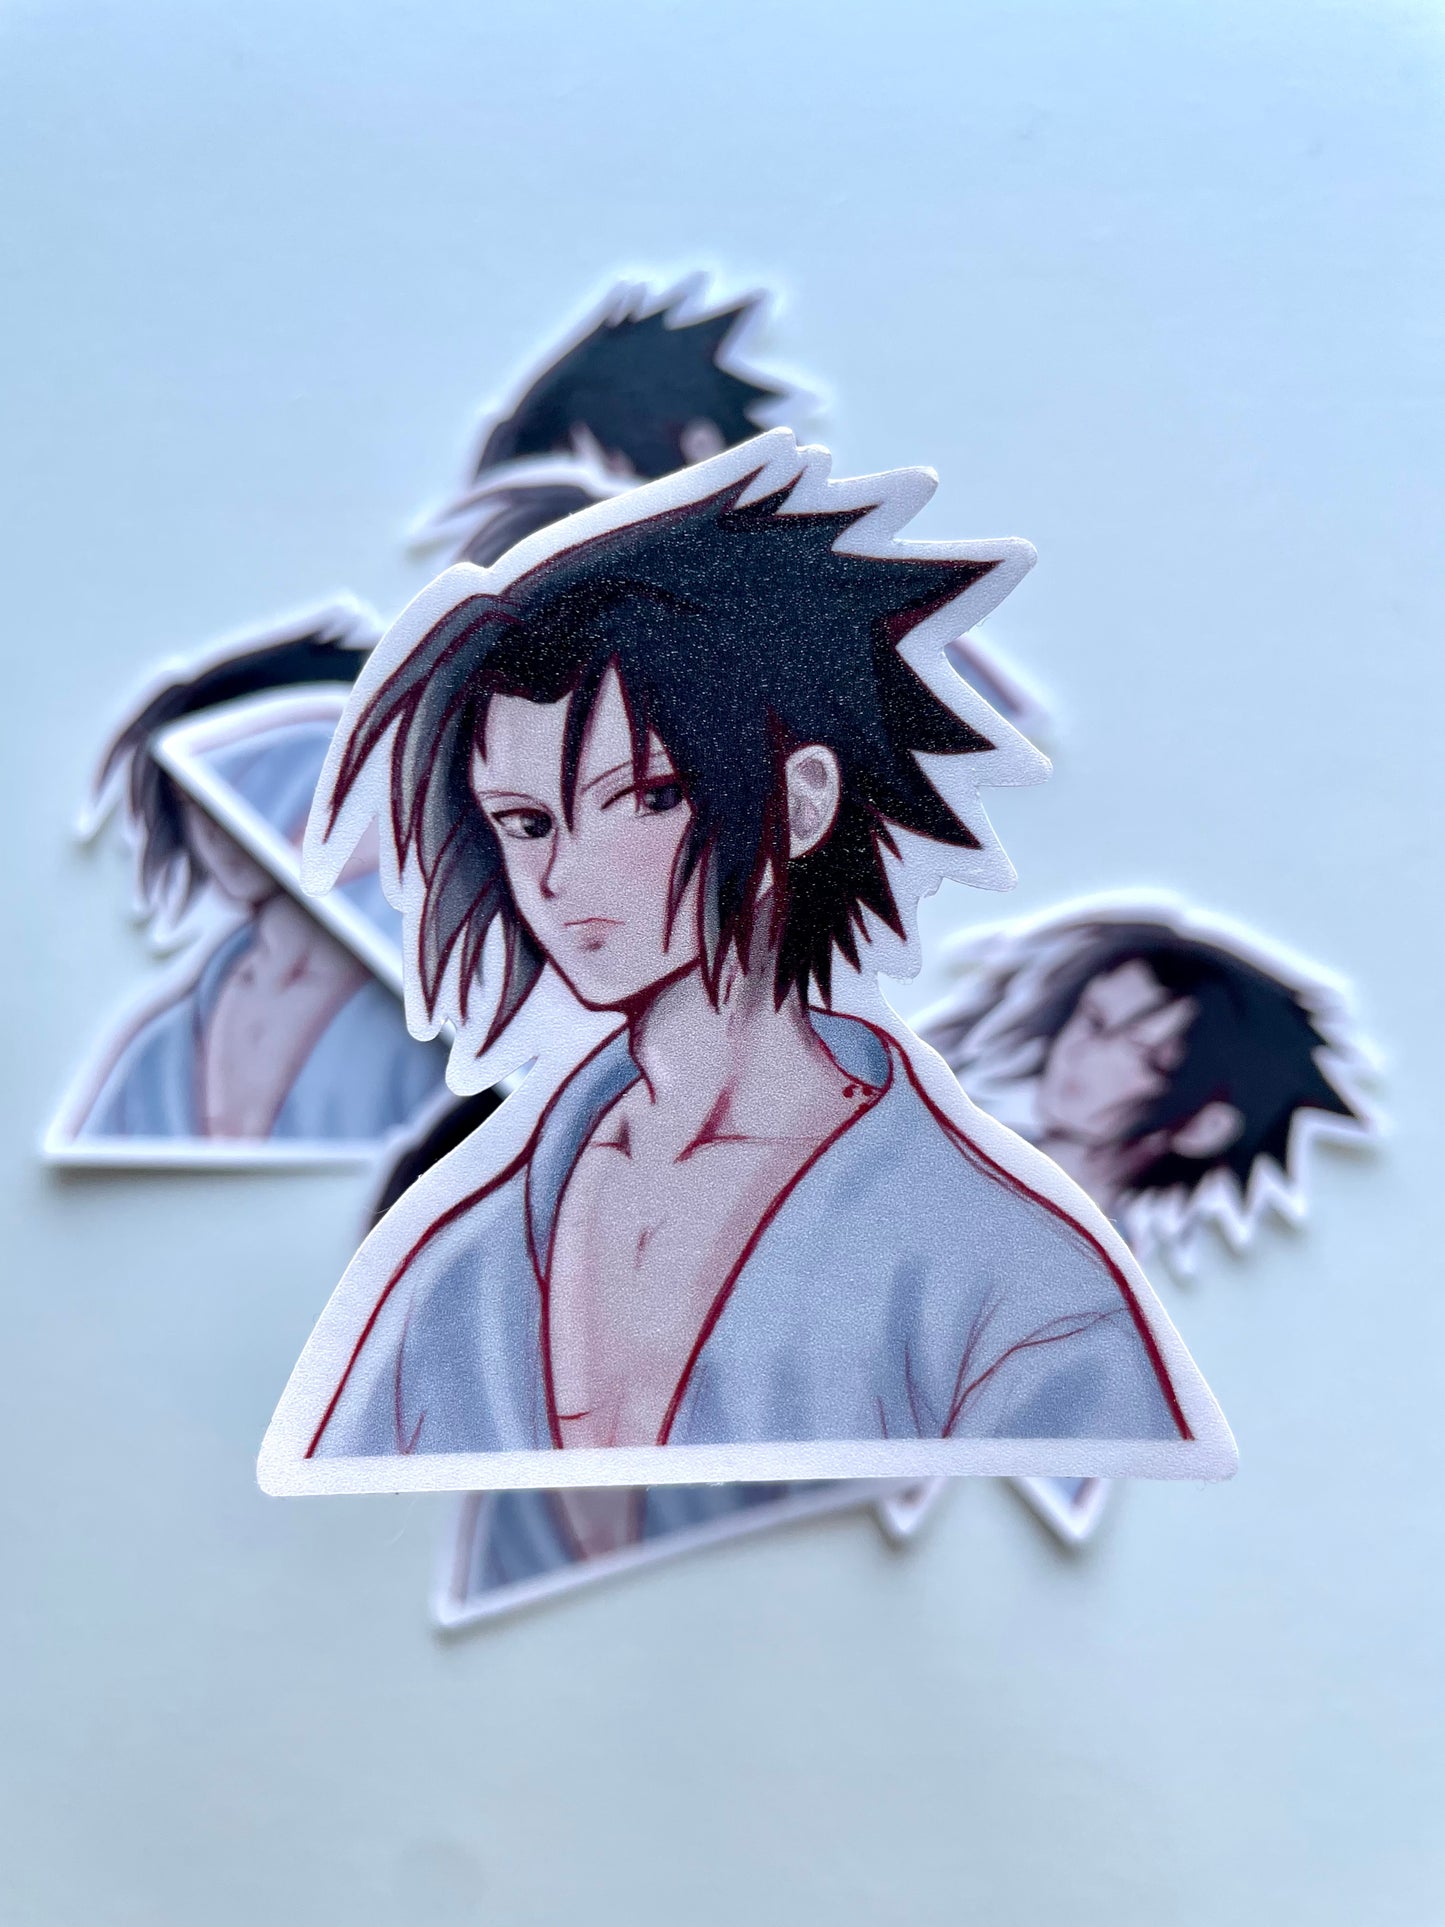 ੈ✩‧₊˚ Shinobi stickers ੈ✩‧₊˚